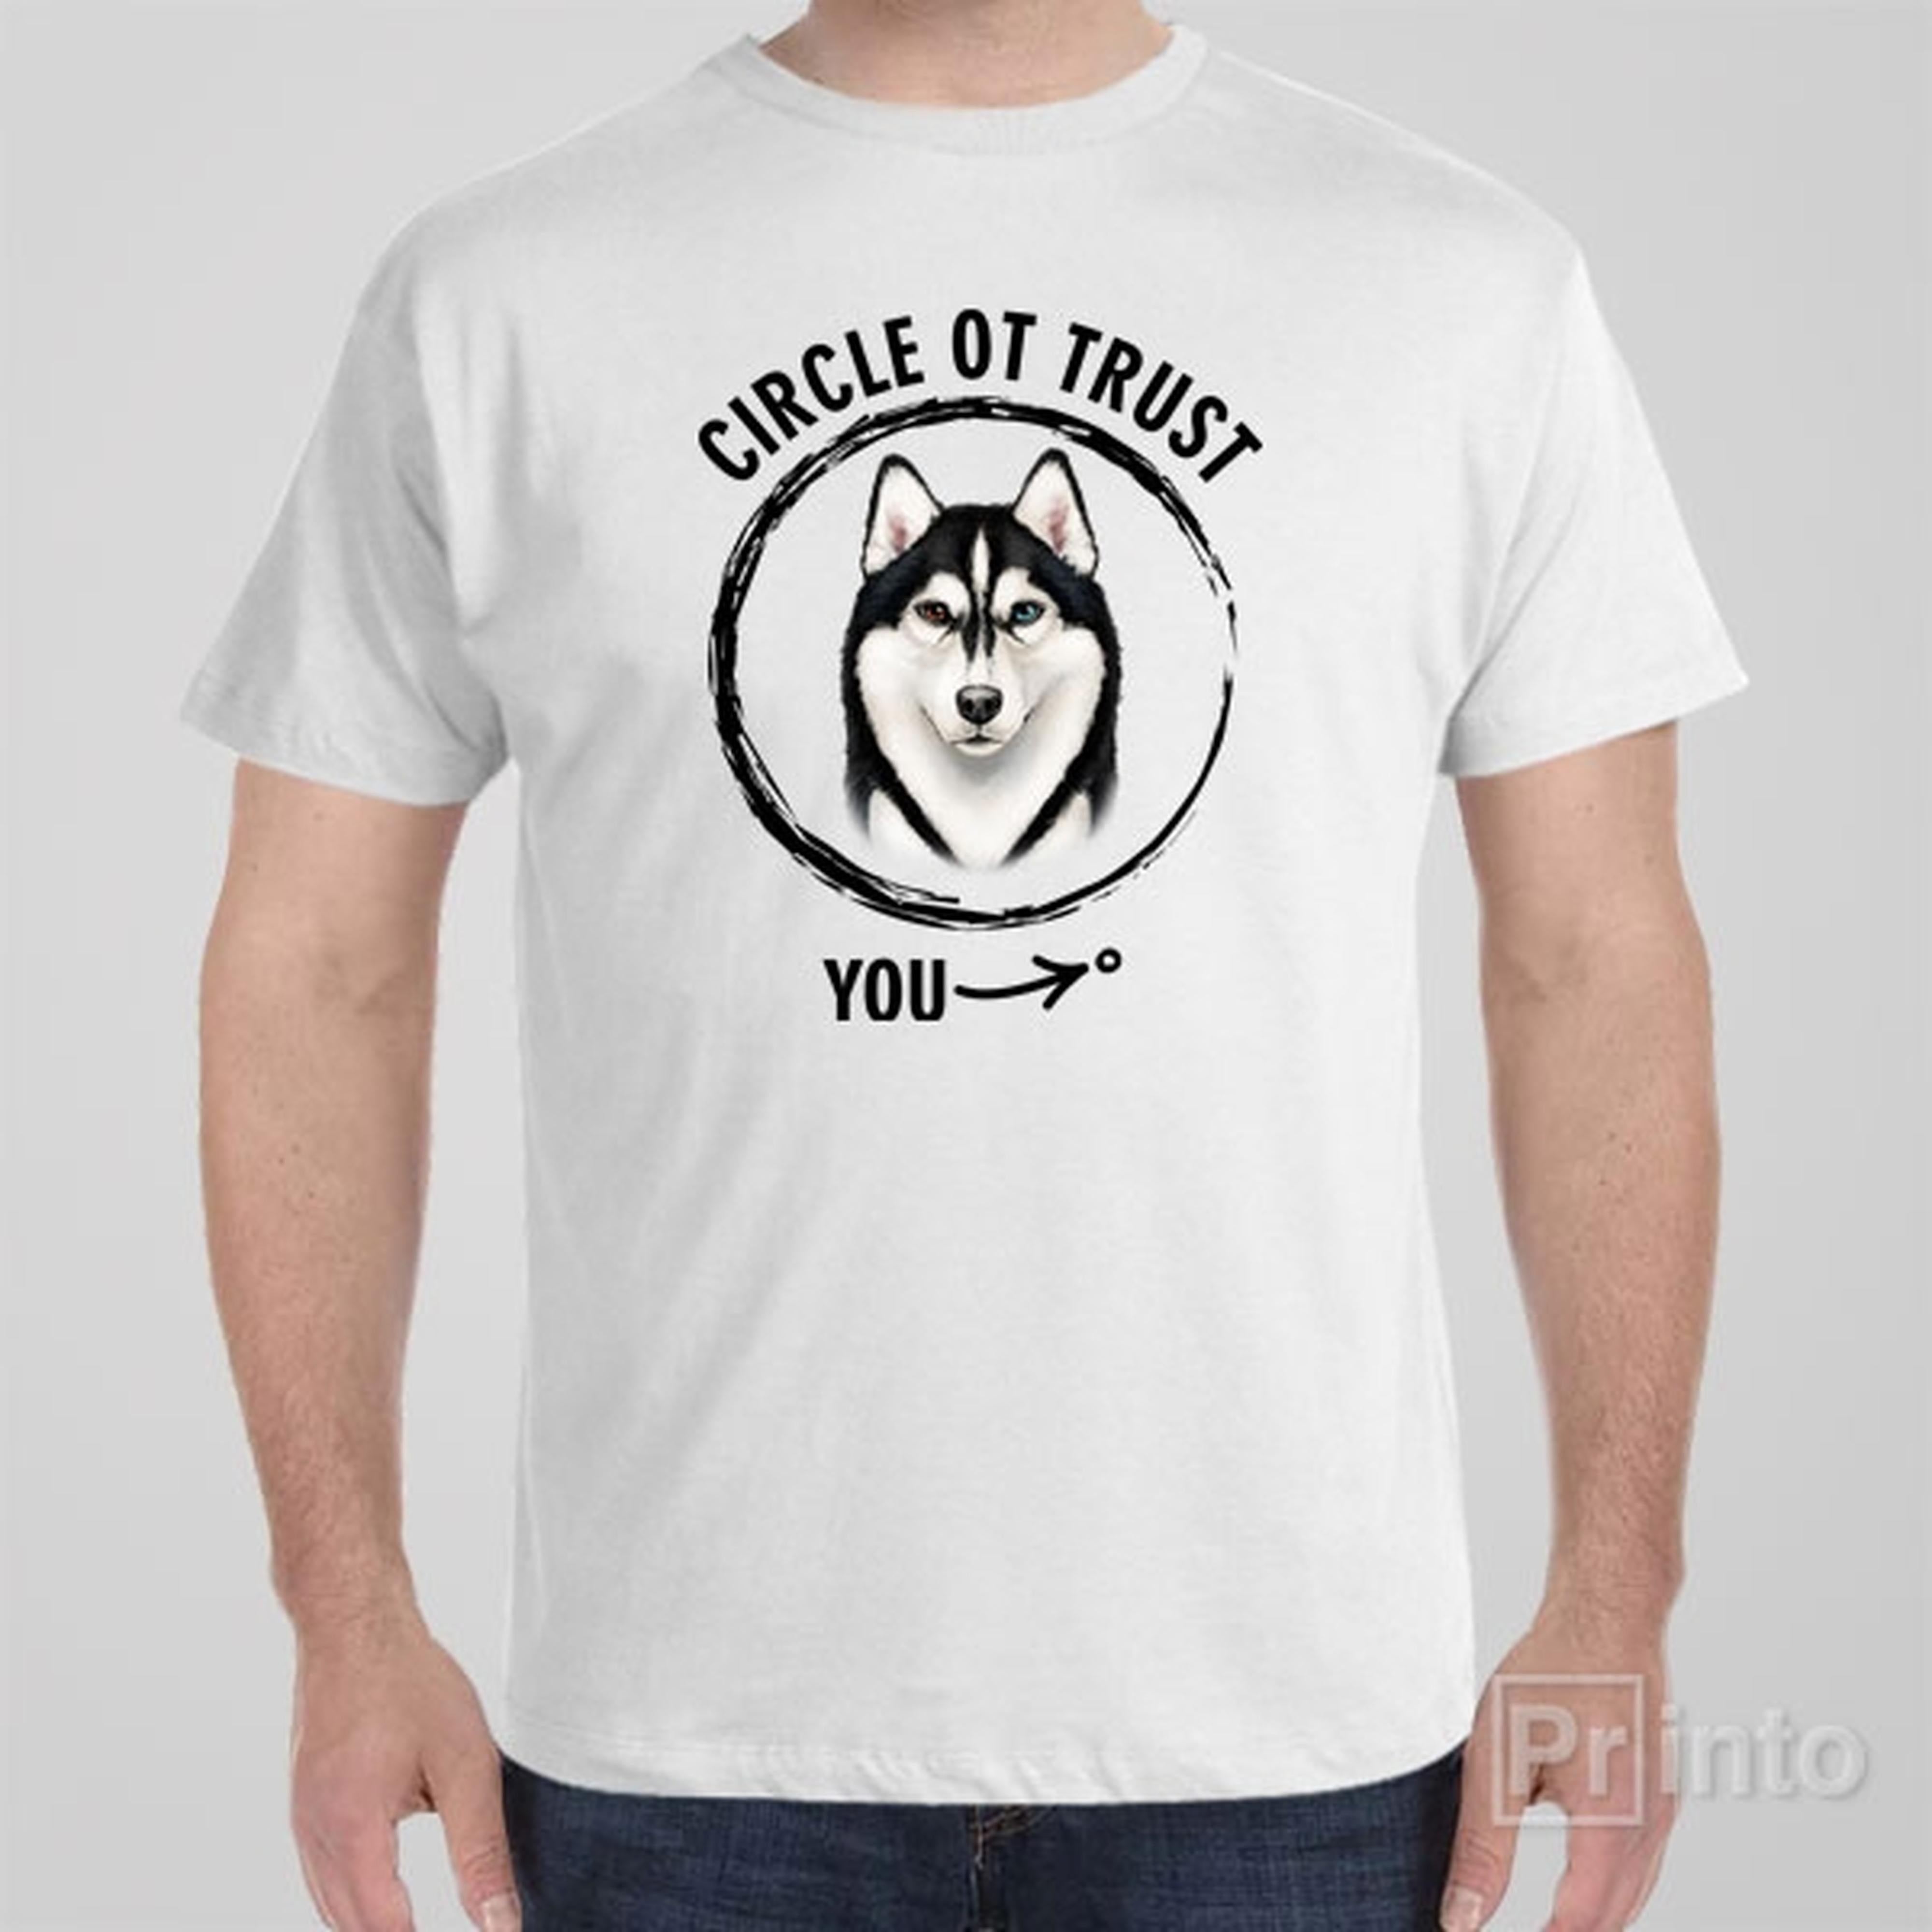 circle-of-trust-husky-t-shirt